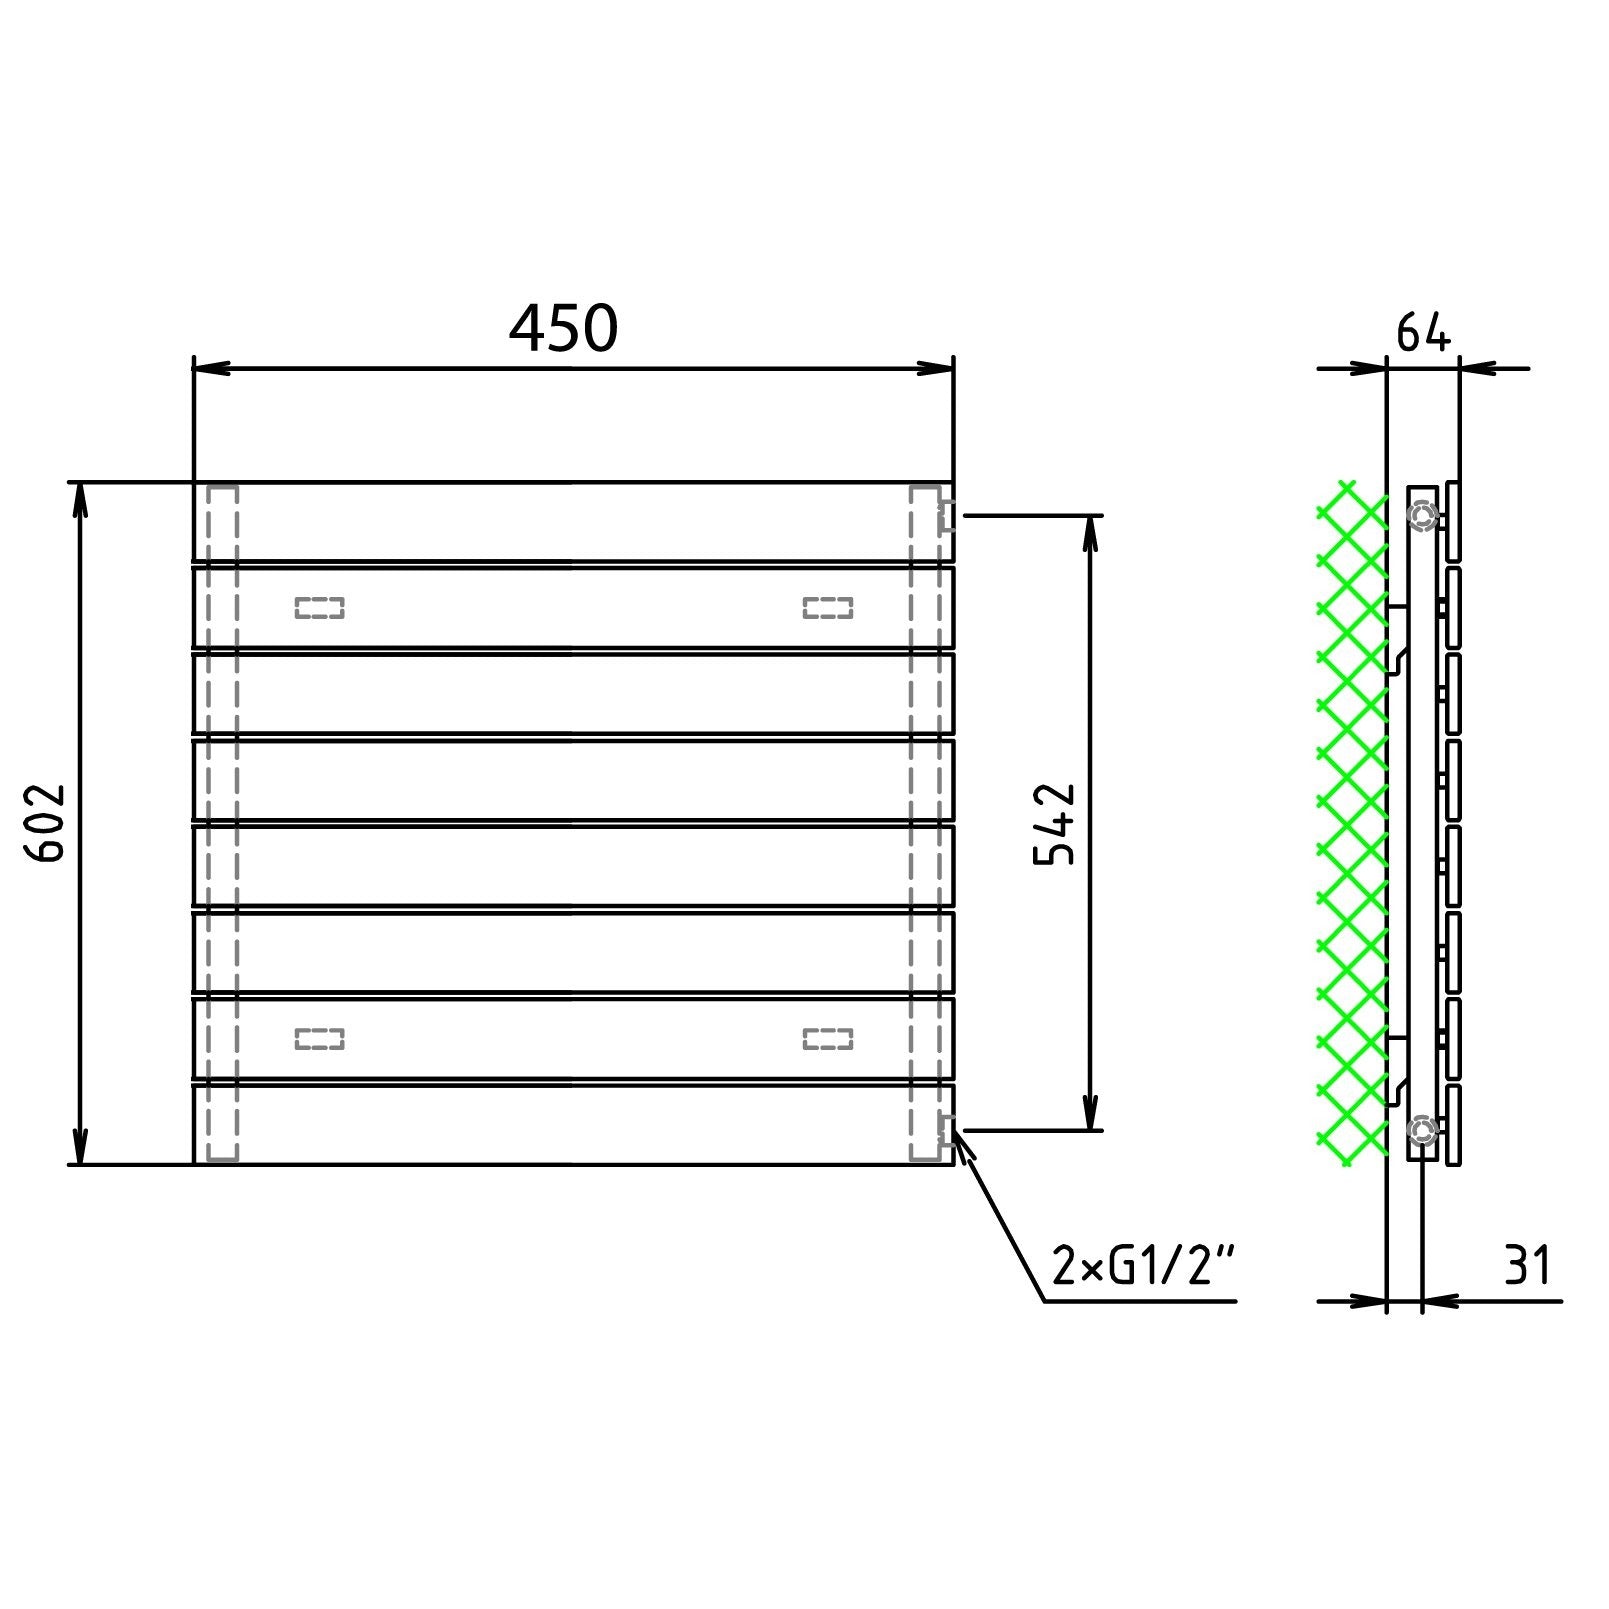 Design Paneelheizkörper 602 x 450 horizontal mit seitlichem Anschluss Heizkörper Badheizkörper flach technische Zeichnung - heizkoerper.shop